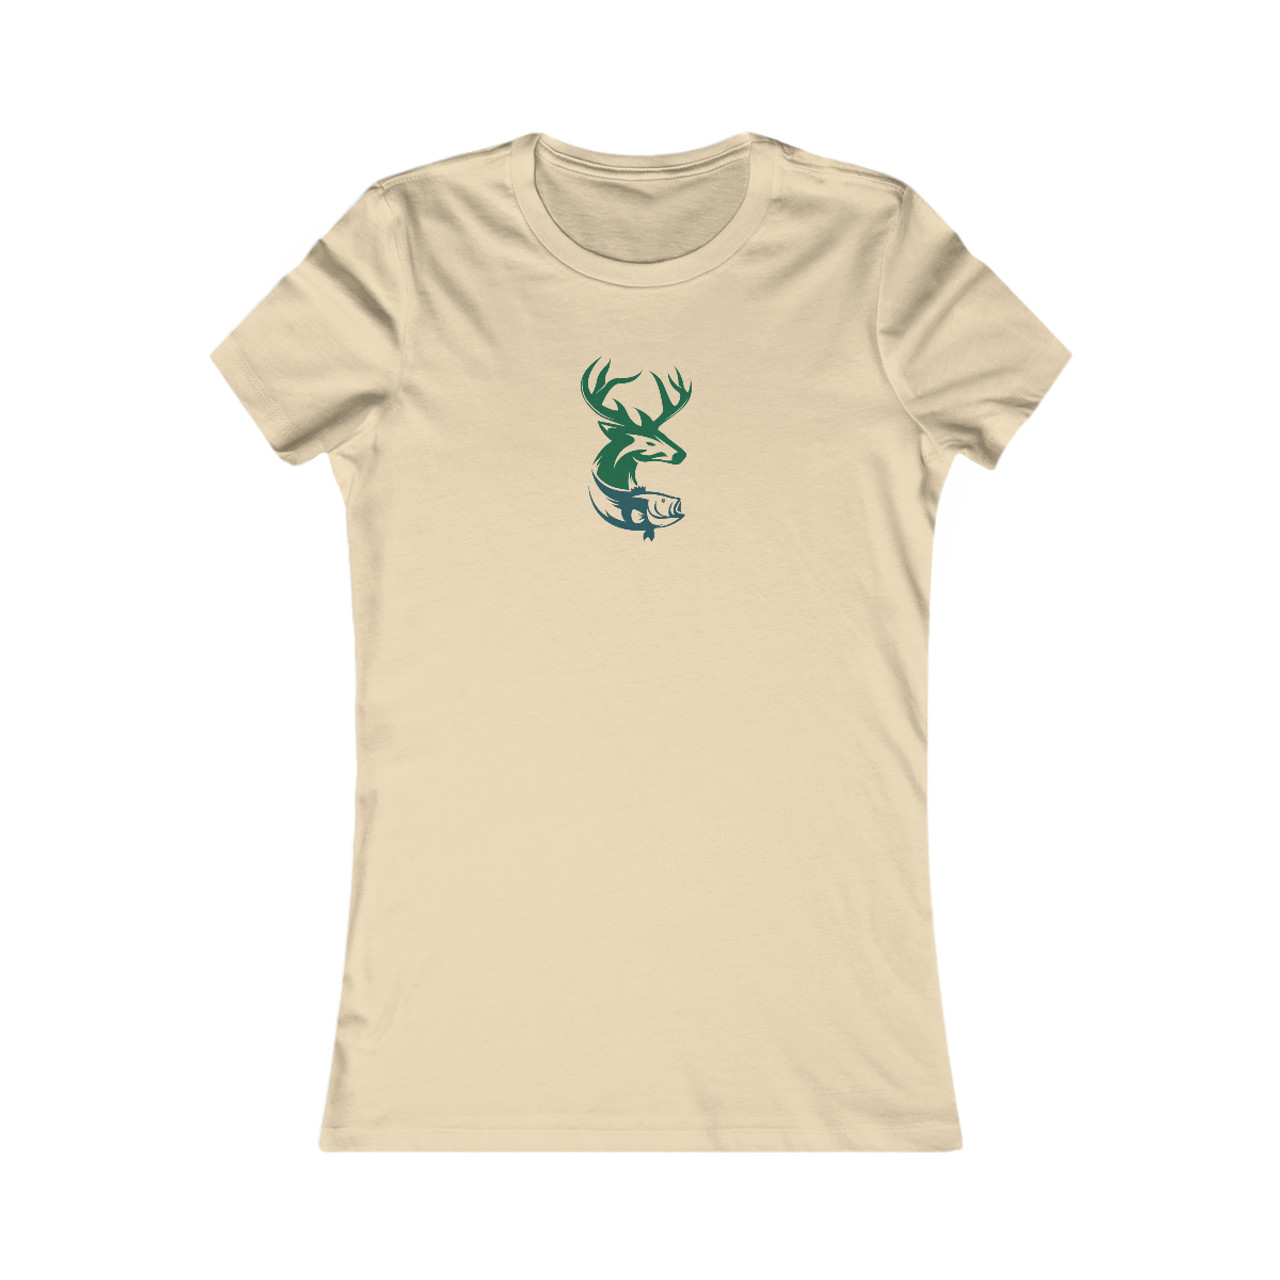 Girl's Mossy Oak Black Water Fishing Logo T-shirt - White - X Large : Target